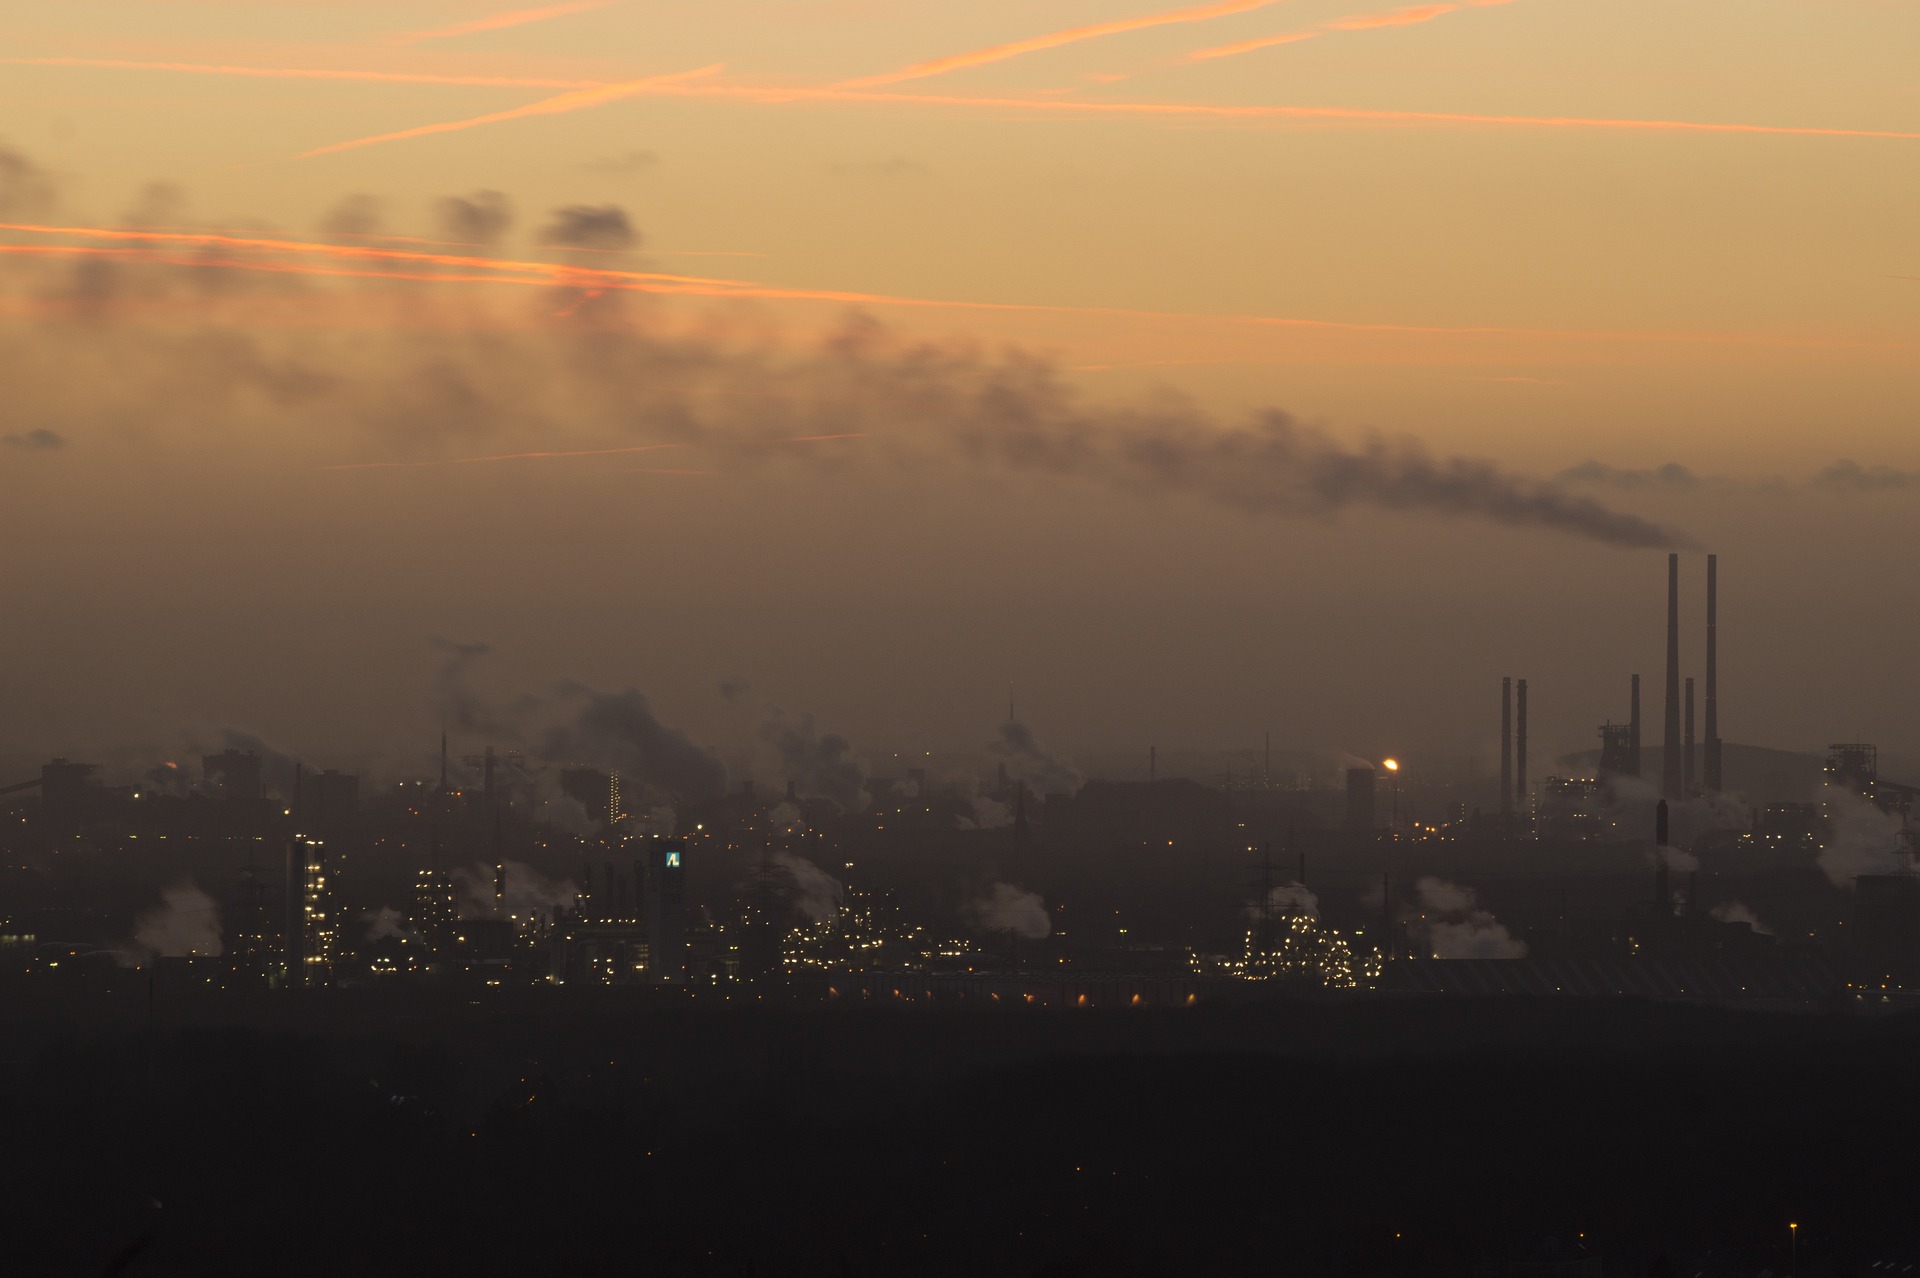 Nippon Steel, Mitsubishi e ExxonMobil estudam investimentos em captura de carbono (CCS) na siderurgia, na região Ásia-Pacífico. Na imagem: Atmosfera completamente nublada por fumaça poluente resultante de emissões industriais (Foto: Markus Lindner/Pixabay)